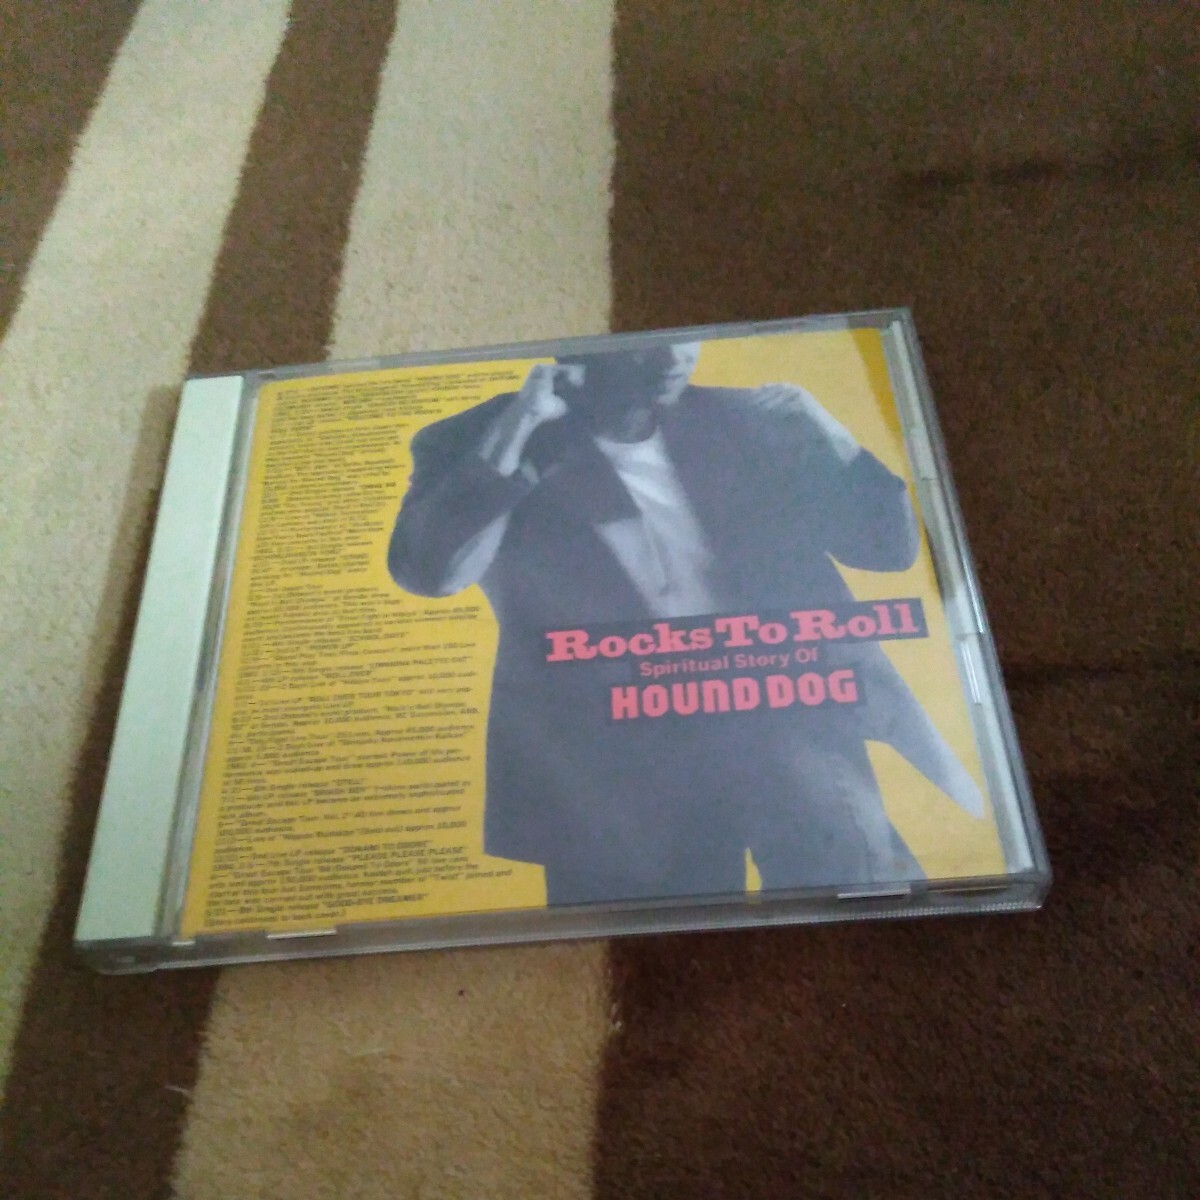 ベストアルバム CD ハウンドドッグ HOUND DOG / ROCKS TO ROLL ff (フォルティシモ),嵐の金曜日,ラスト・シーン 大友康平の画像1